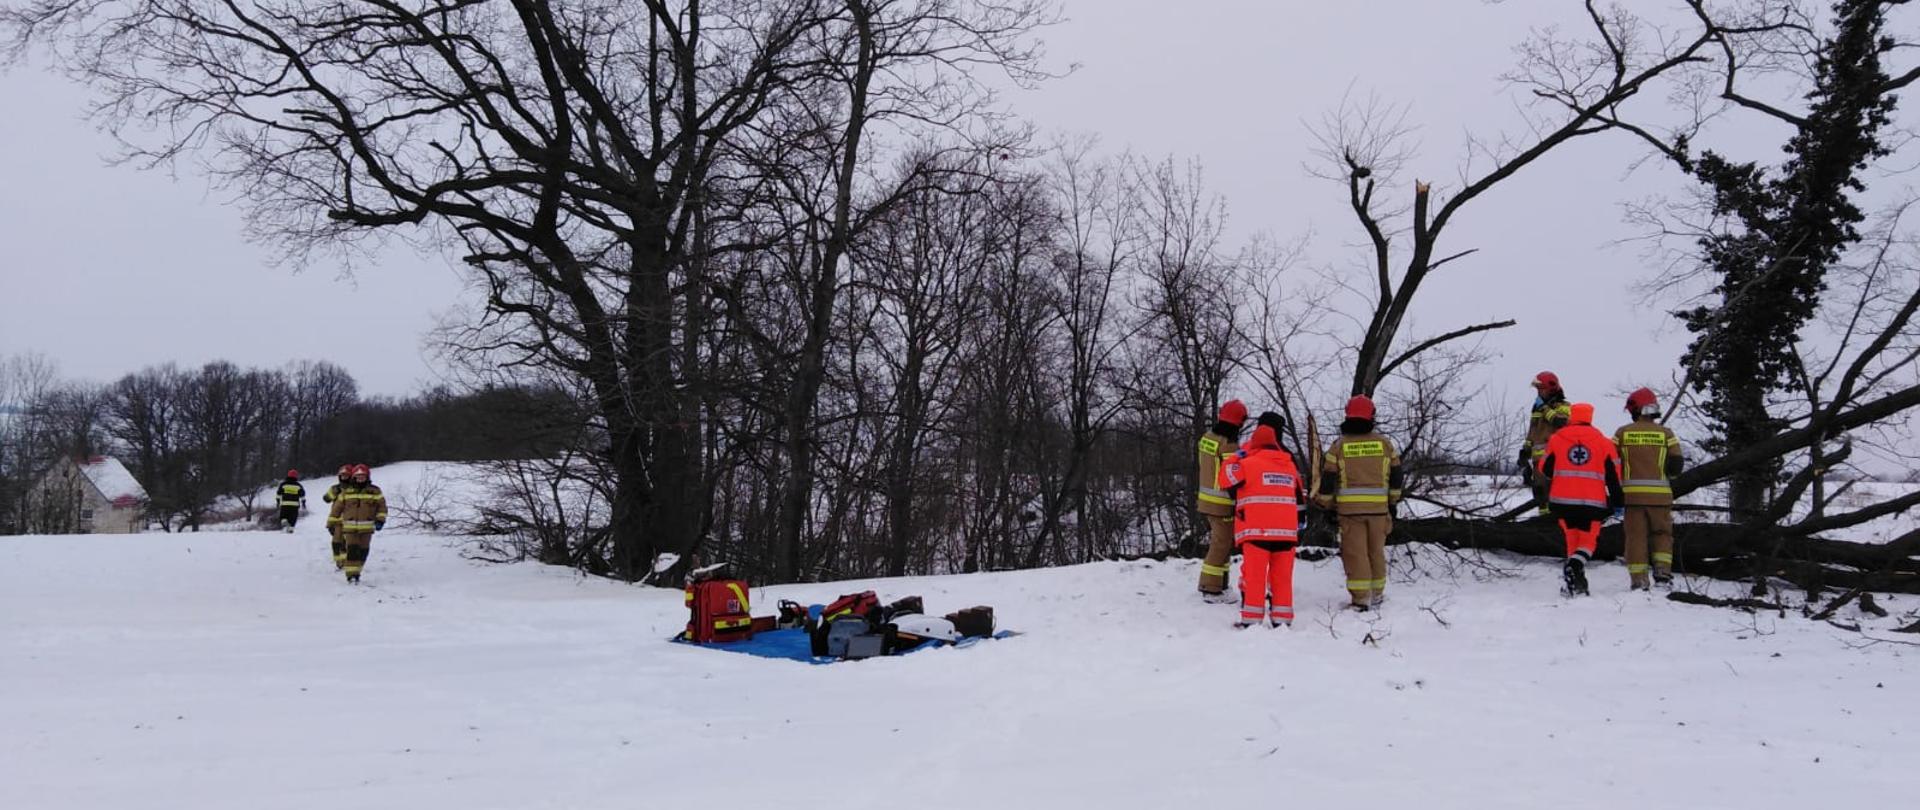 Obraz przedstawia strażaków w umundurowaniu specjalnym oraz ratowników medycznych. Osoby znajdują się na polu pokrytym śniegiem. W tle rosnące drzewa oraz jedno drzewo powalone.